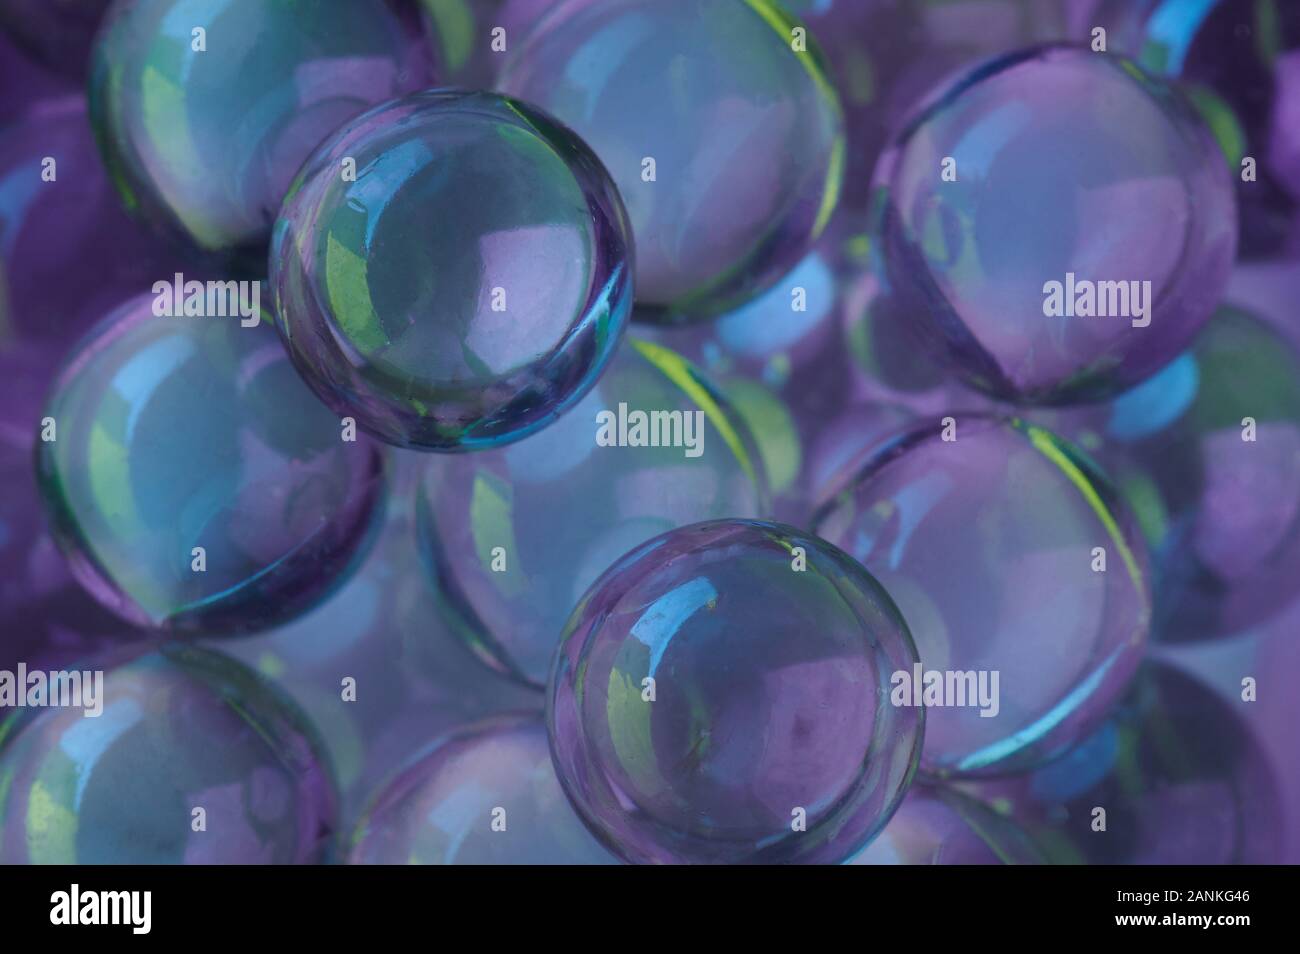 Boules de verre violet colorée vue en gros background Banque D'Images